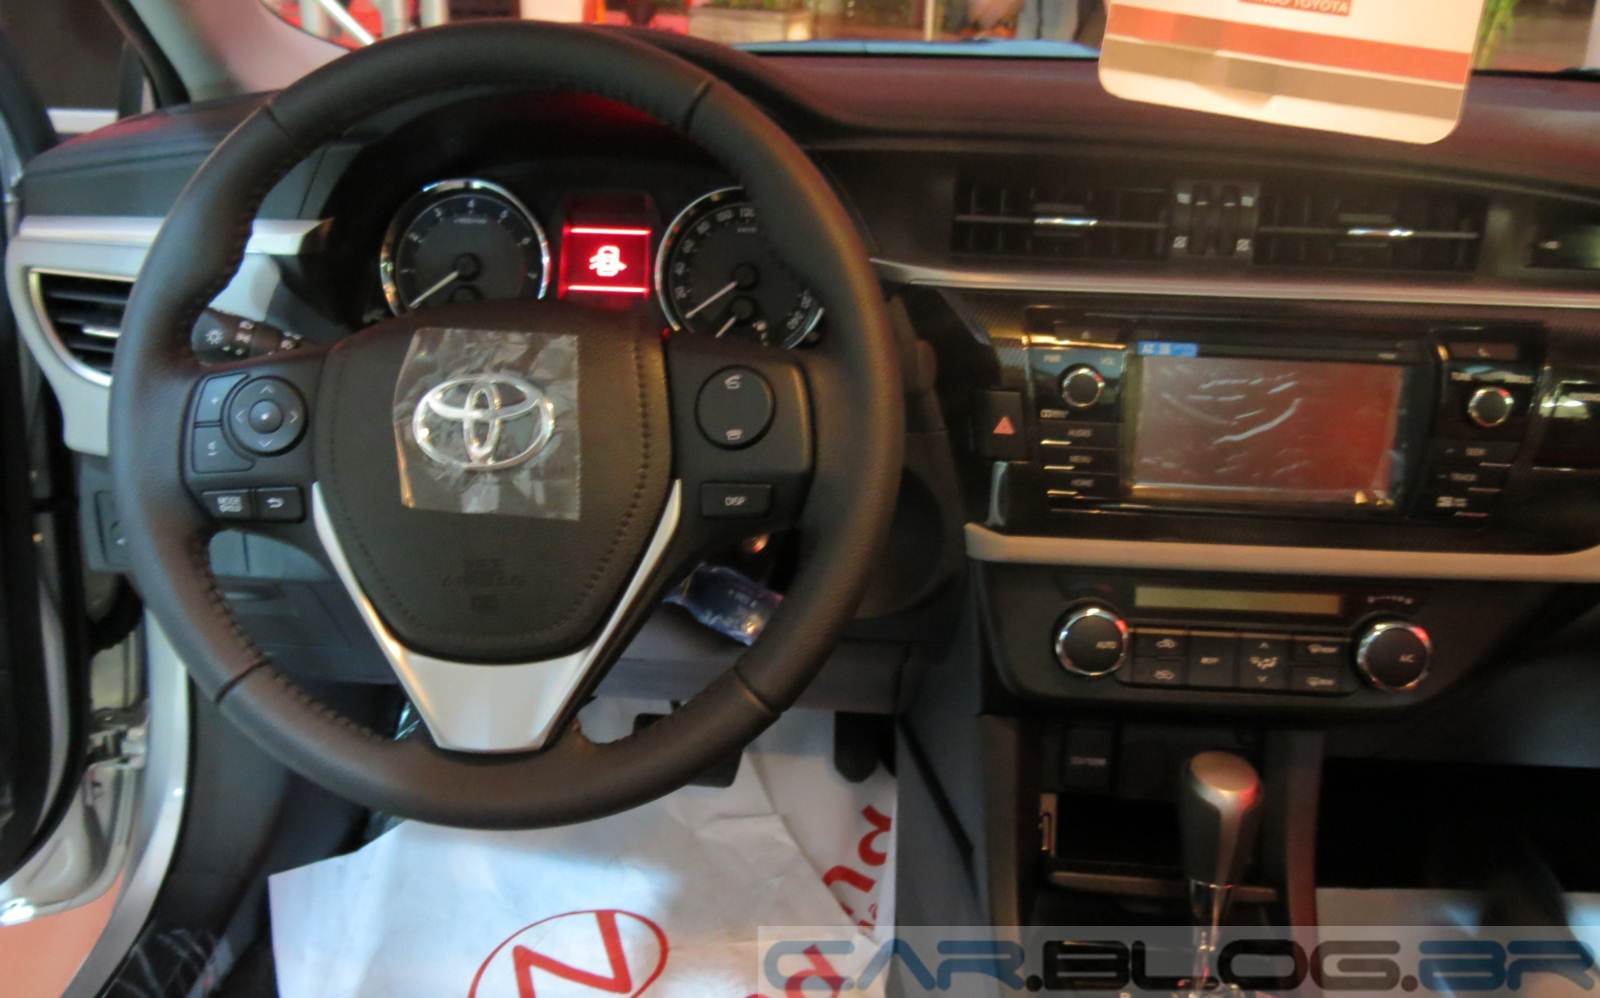 Novo Corolla XEi 2015 - interior - ar-condicionado digital